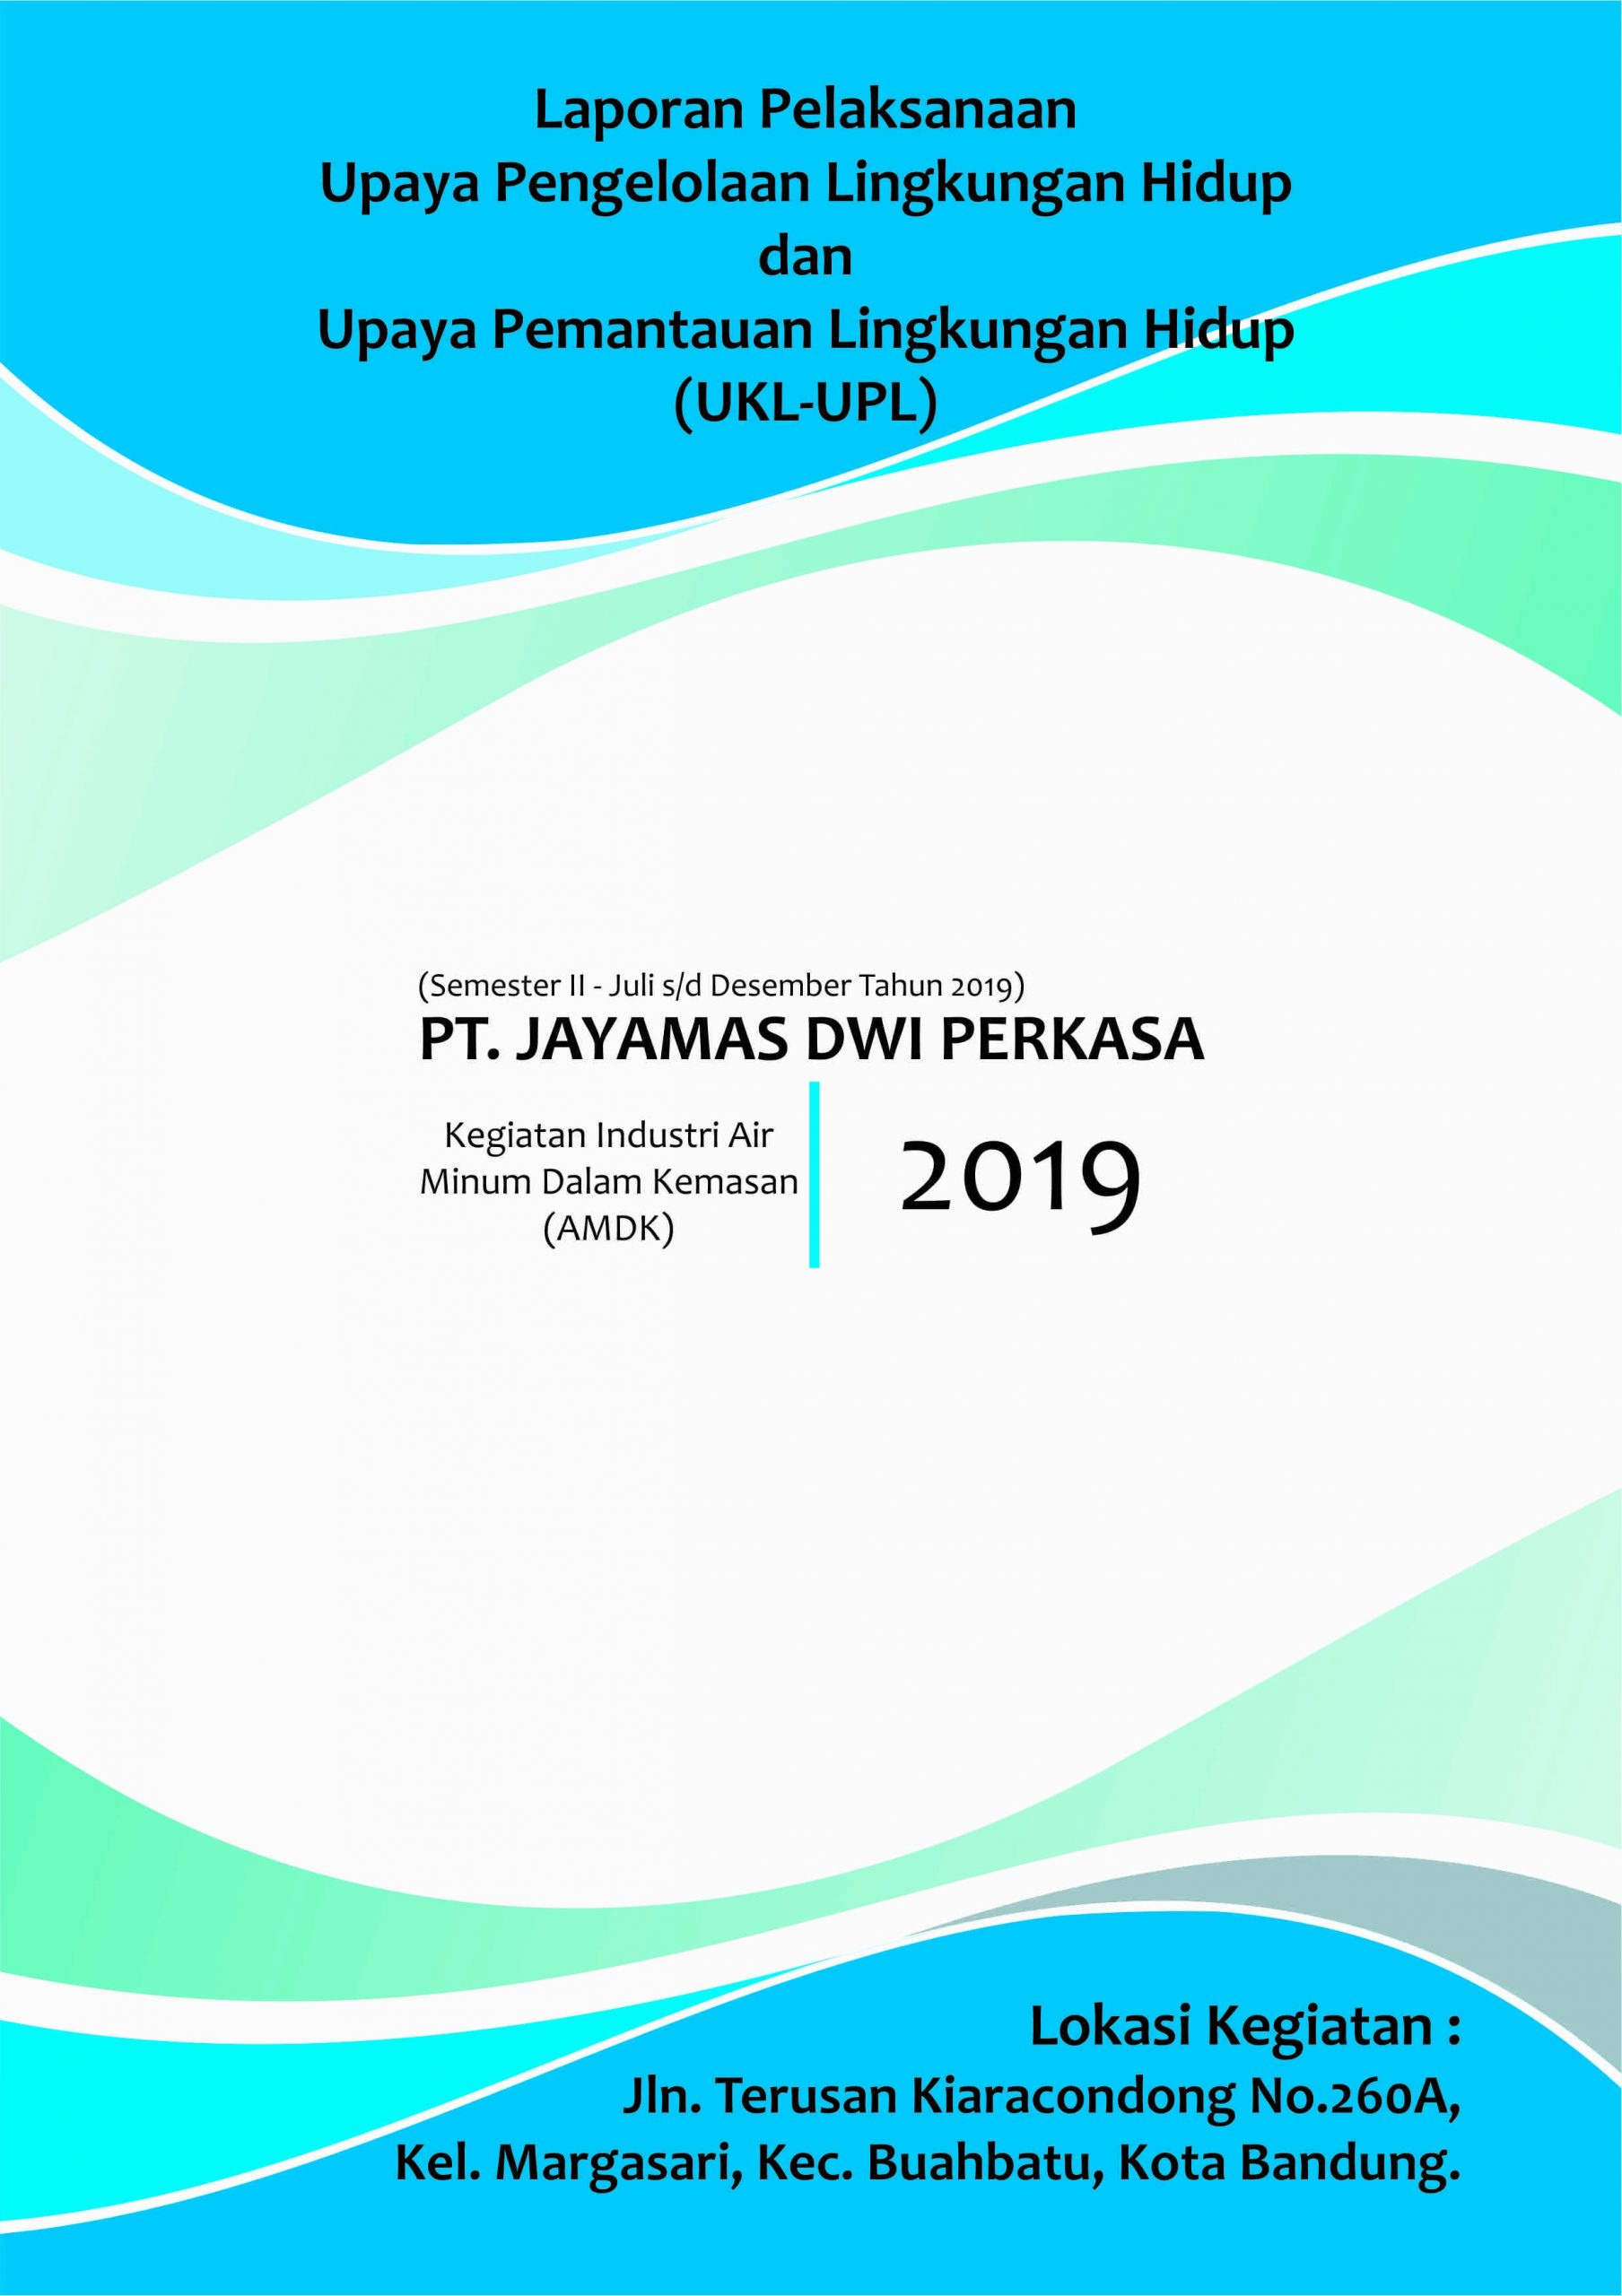 Laporan Pelaksanaan UKL-UPL PT. Jayamas Dwi Perkasa Semester II 2019